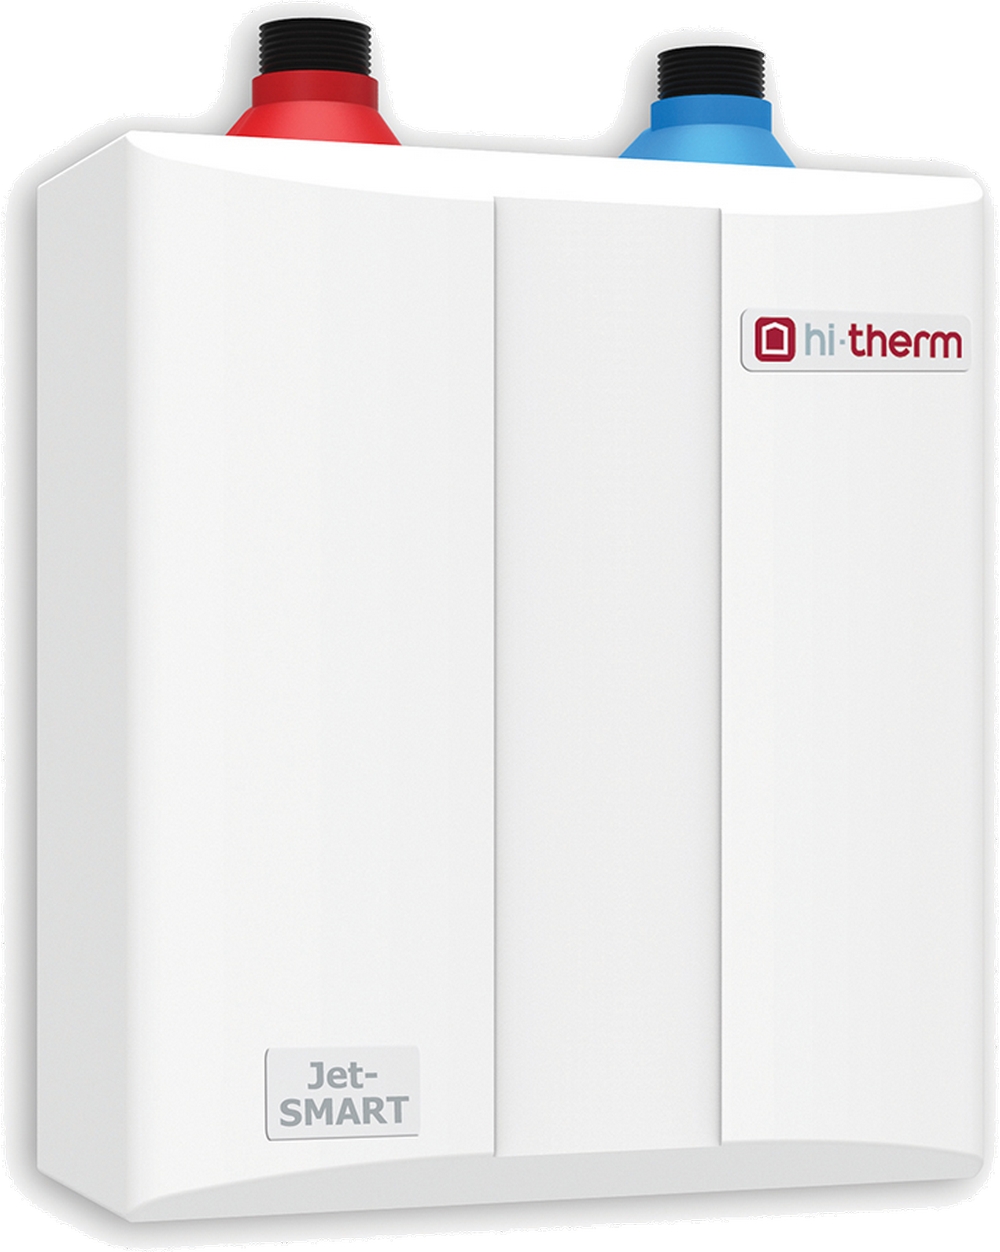 Безнапорный проточный водонагреватель Hi-Therm JET-SMART 3.5